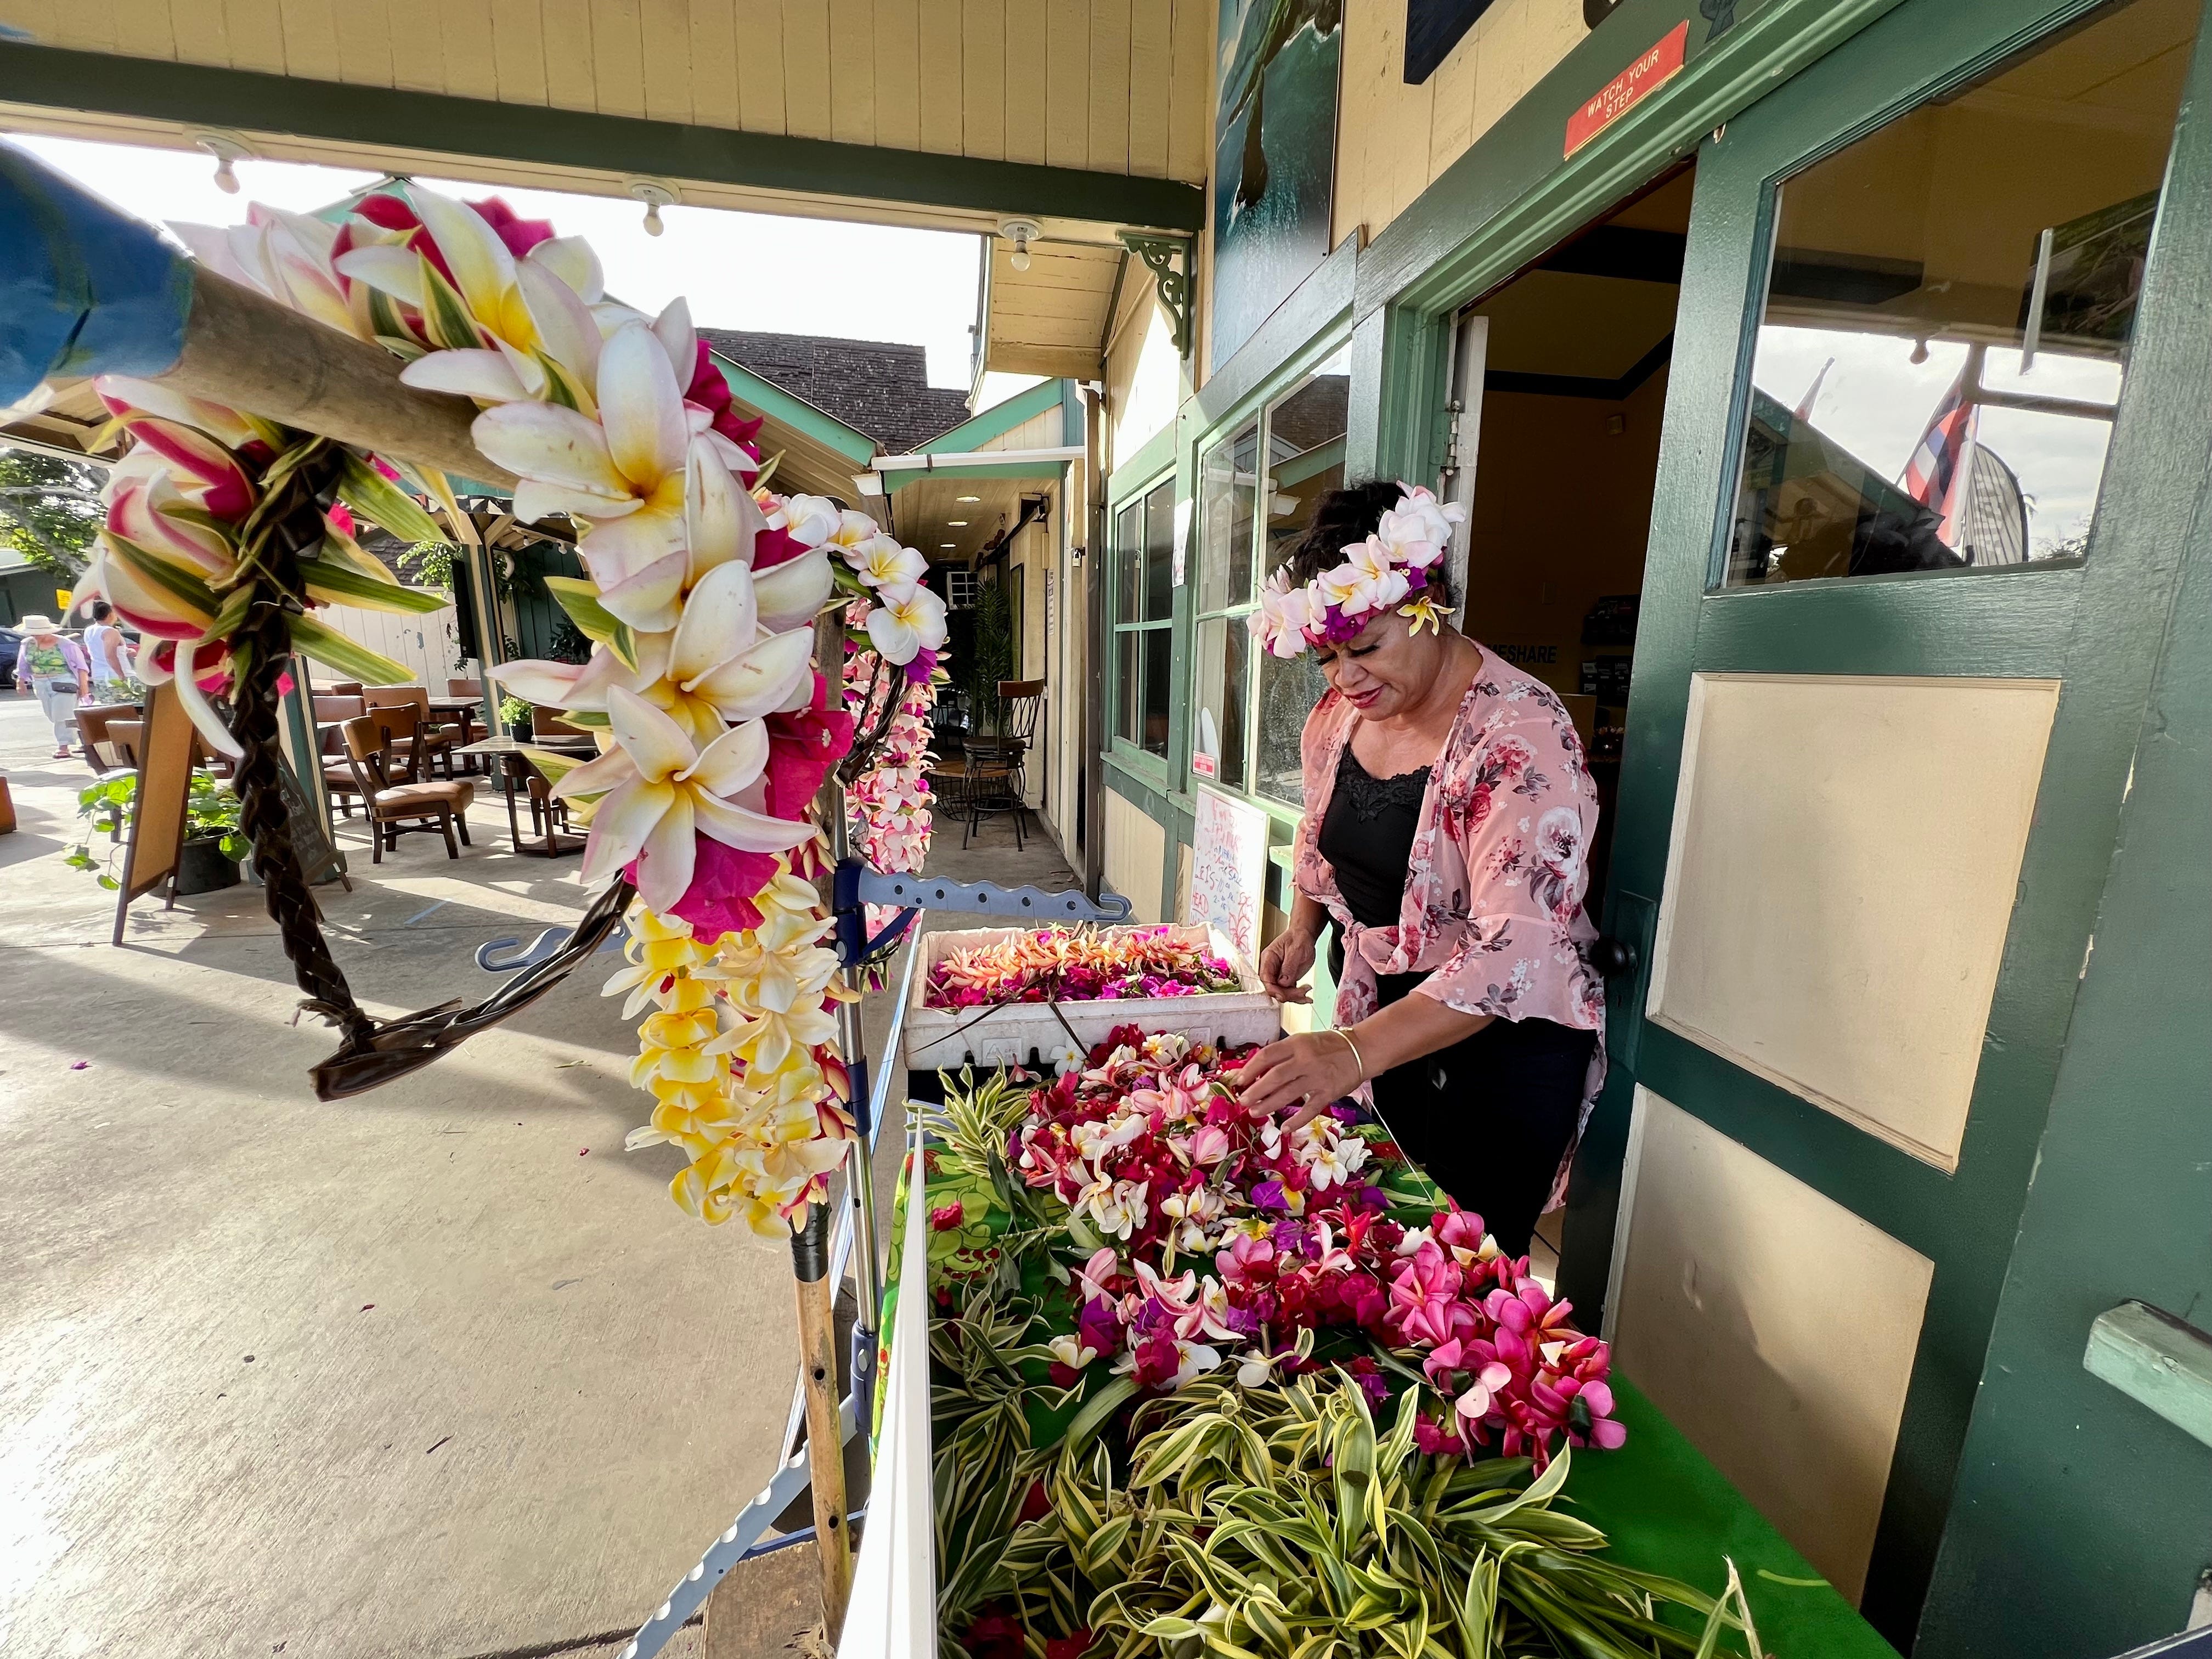 lokaler lei-Hersteller in hawaii, frau, die hinter dem stand steht, der leis verkauft